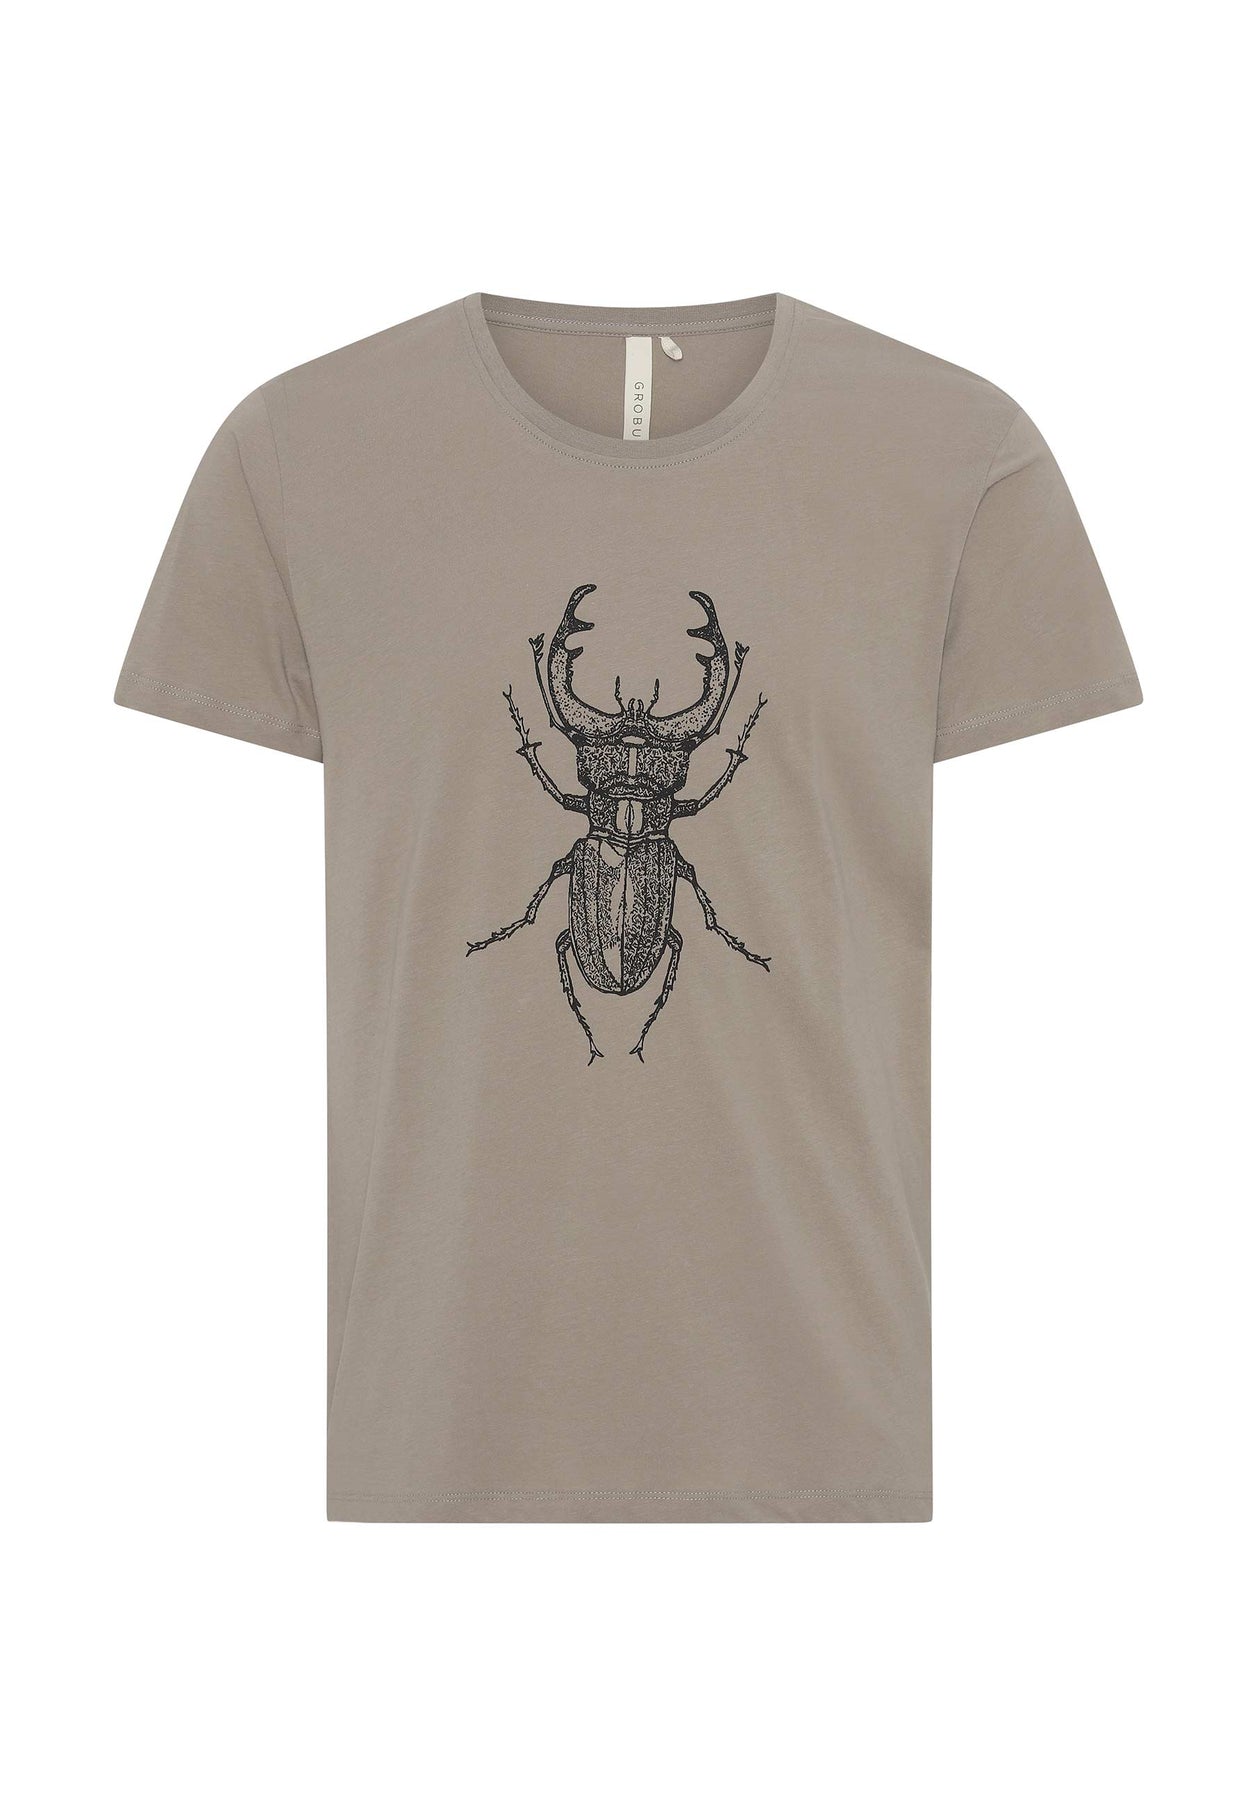 GROBUND Manfred t-shirten - den med eghjort i moler